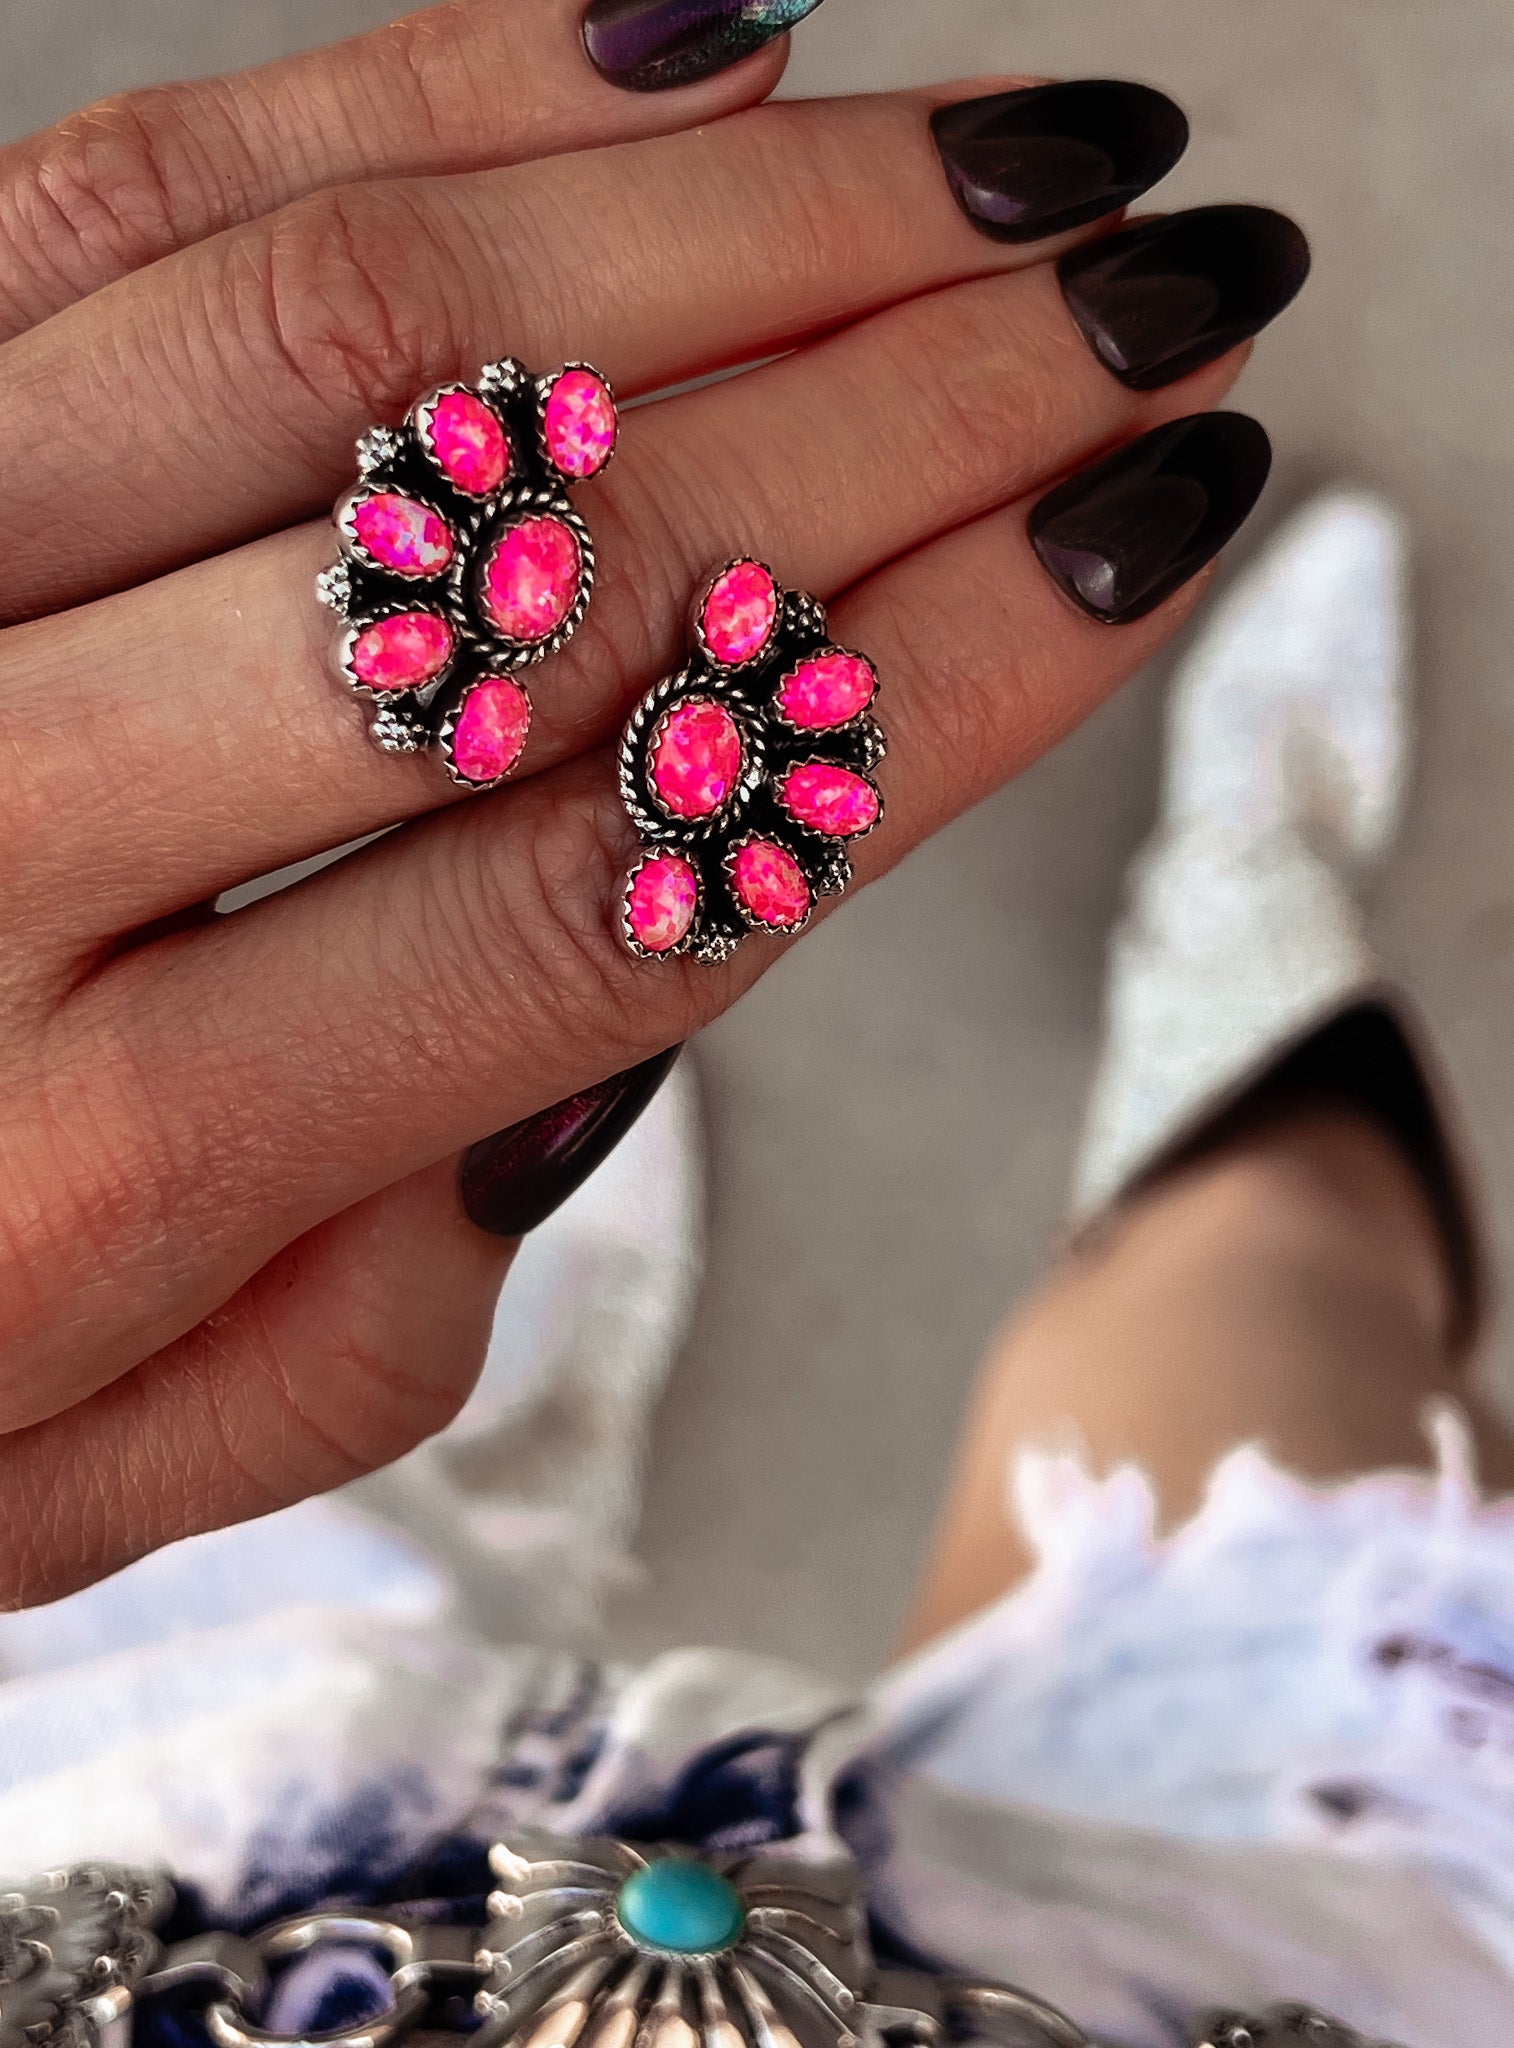 Cute Little Half Cluster Blossom Earrings-Stud Earrings-Krush Kandy, Women's Online Fashion Boutique Located in Phoenix, Arizona (Scottsdale Area)